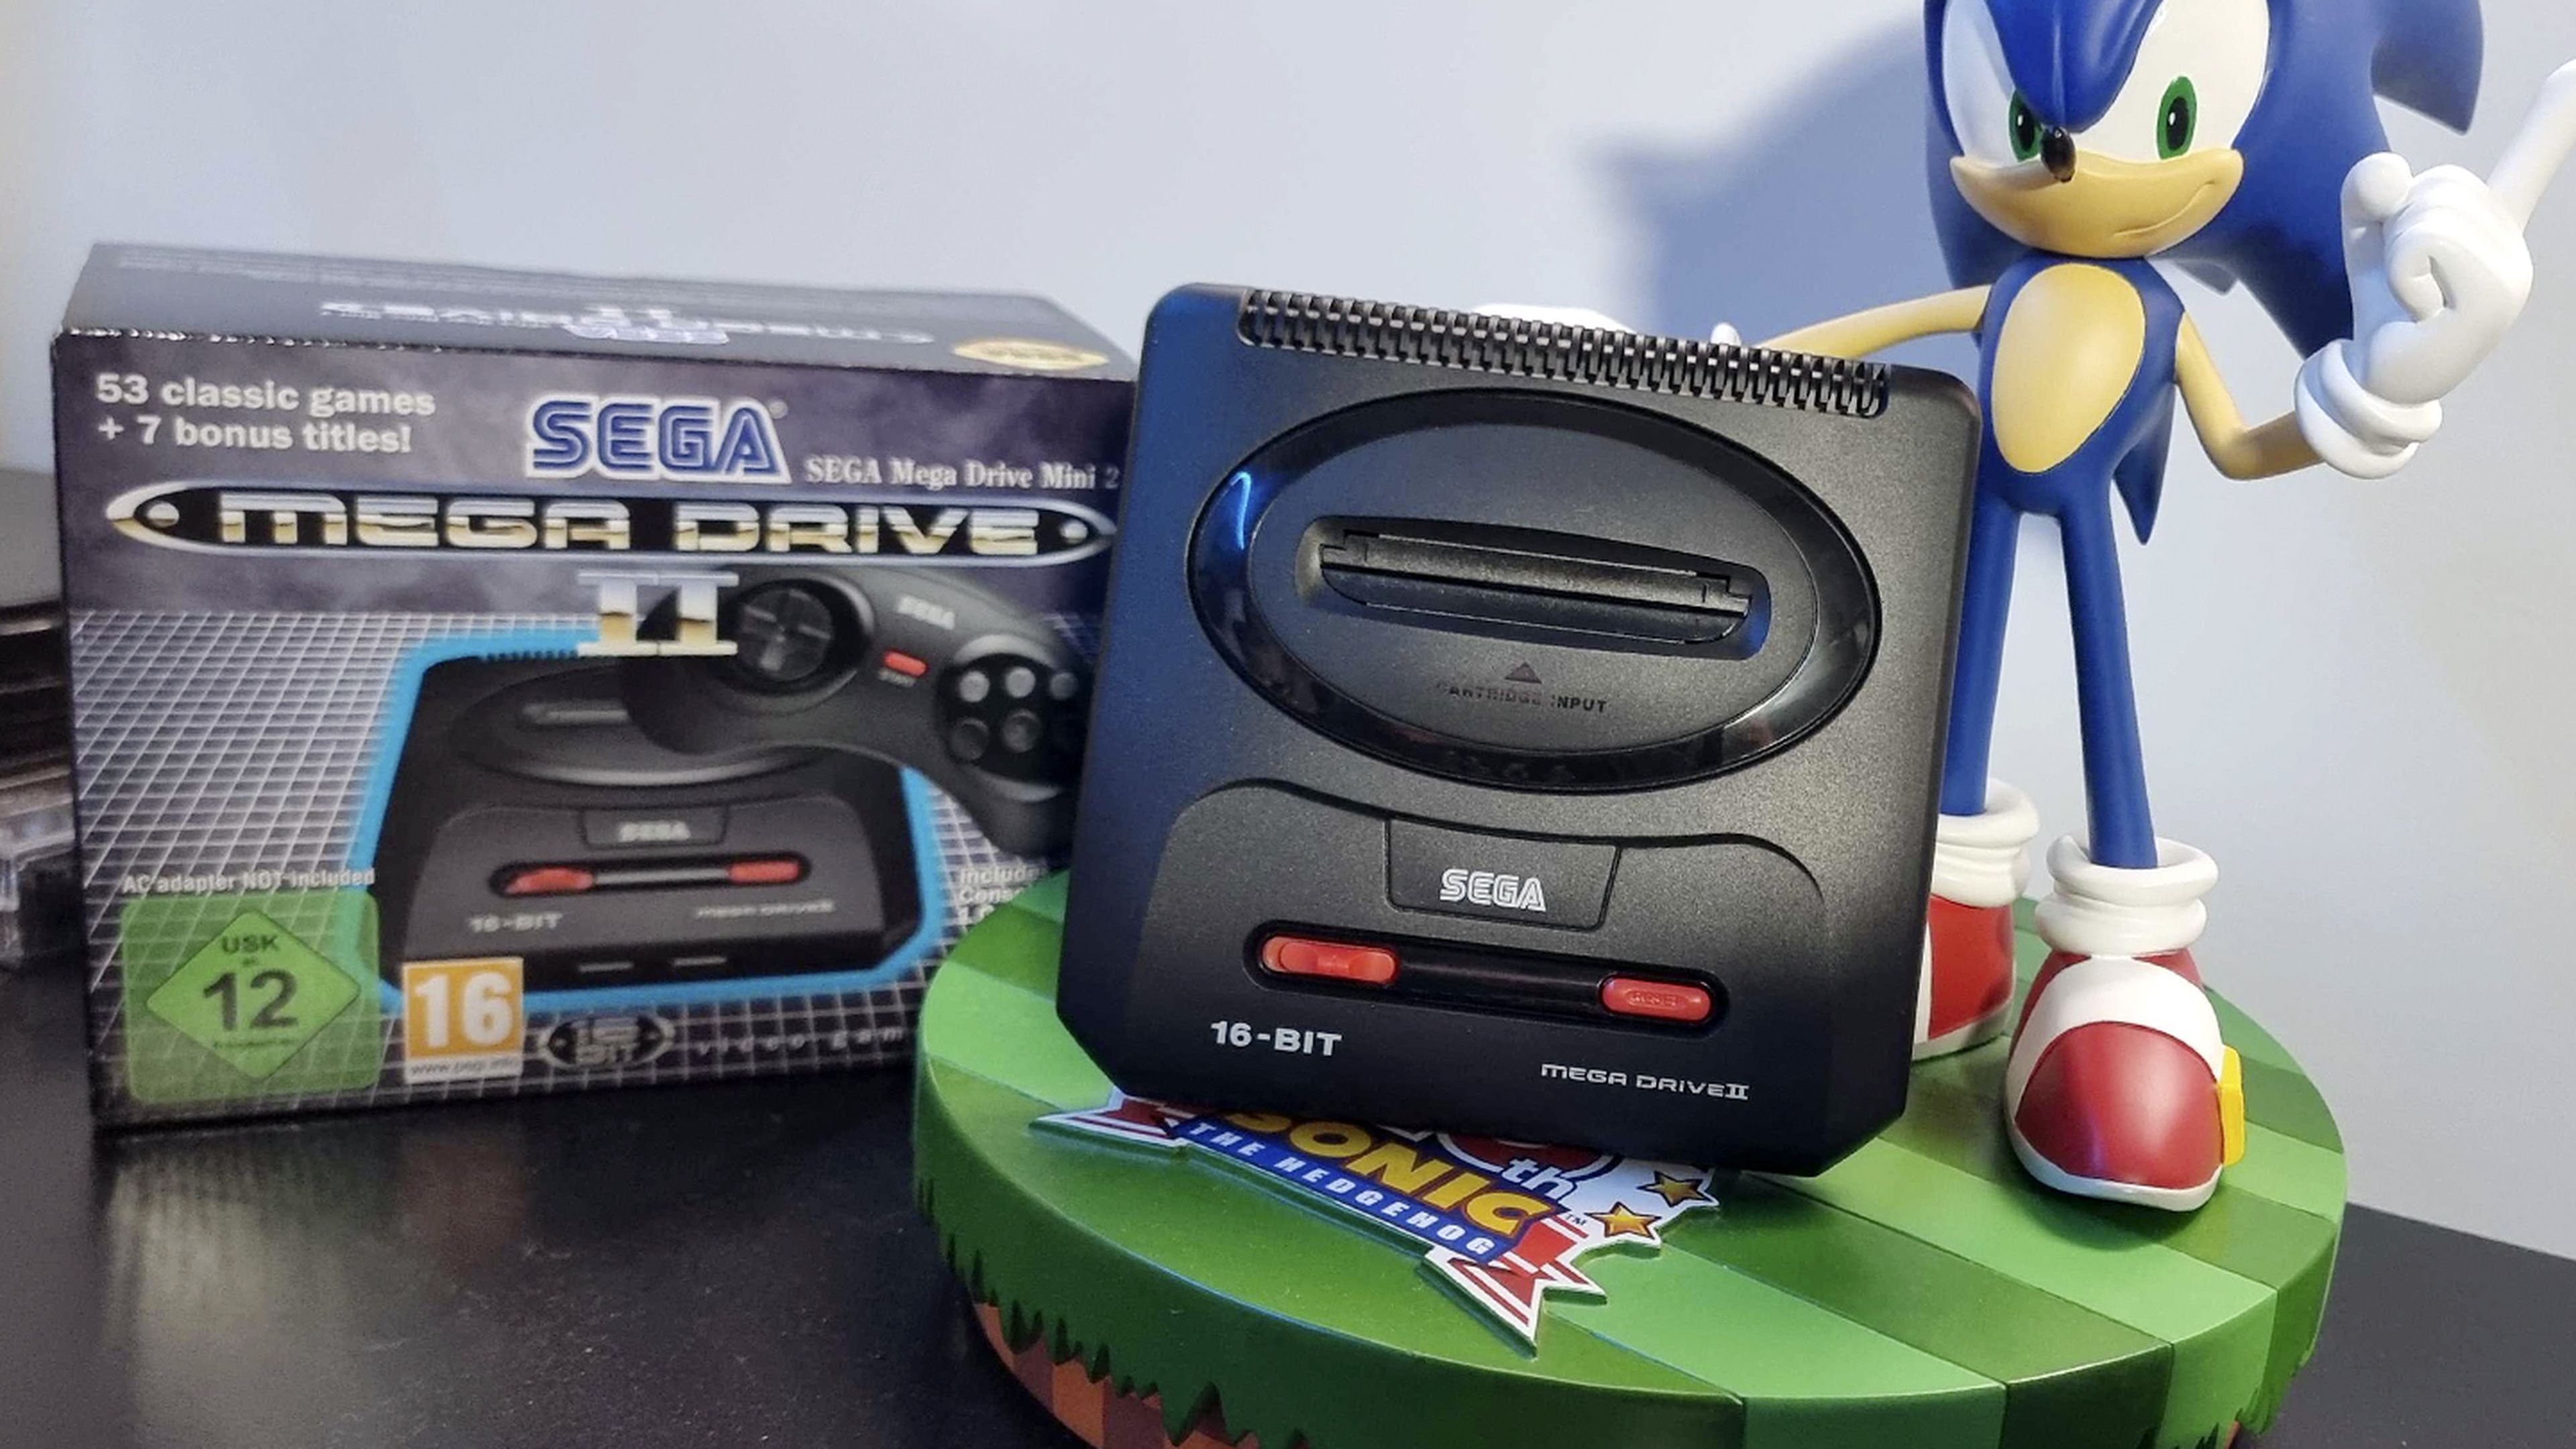 Análisis y opinión de SEGA Mega Drive Mini 2. ¿Está la nueva consola retro  a la altura?